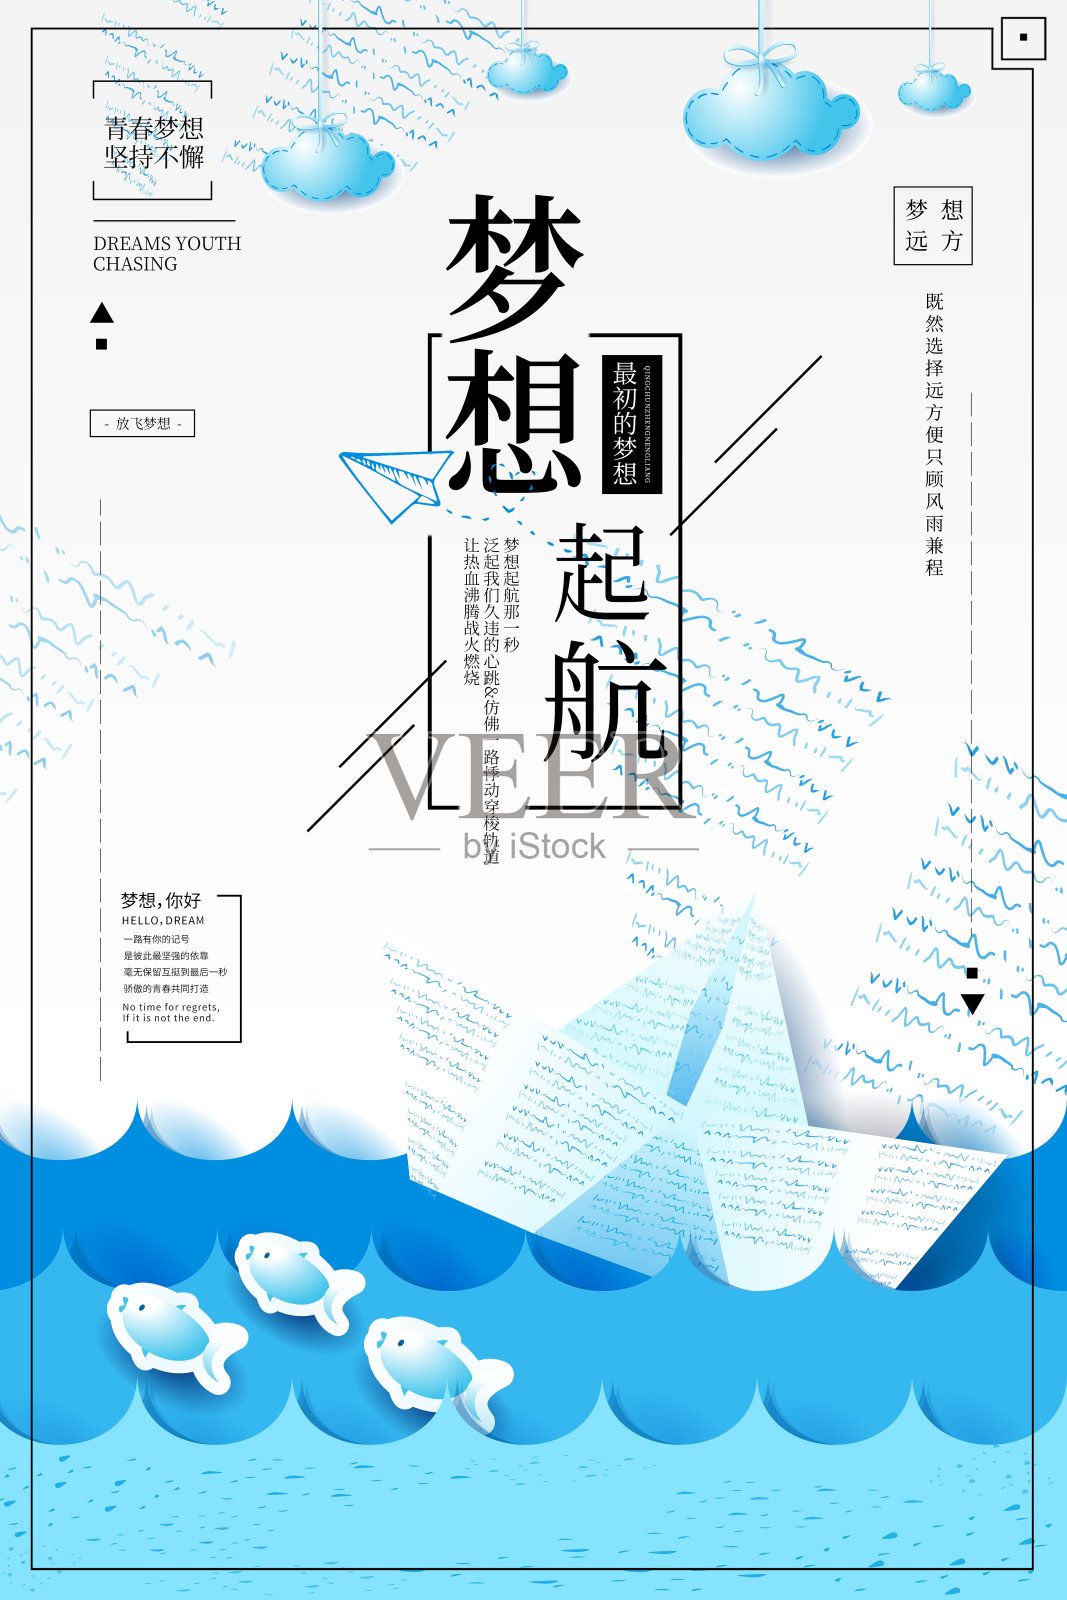 大气梦想起航企业文化海报设计模板素材